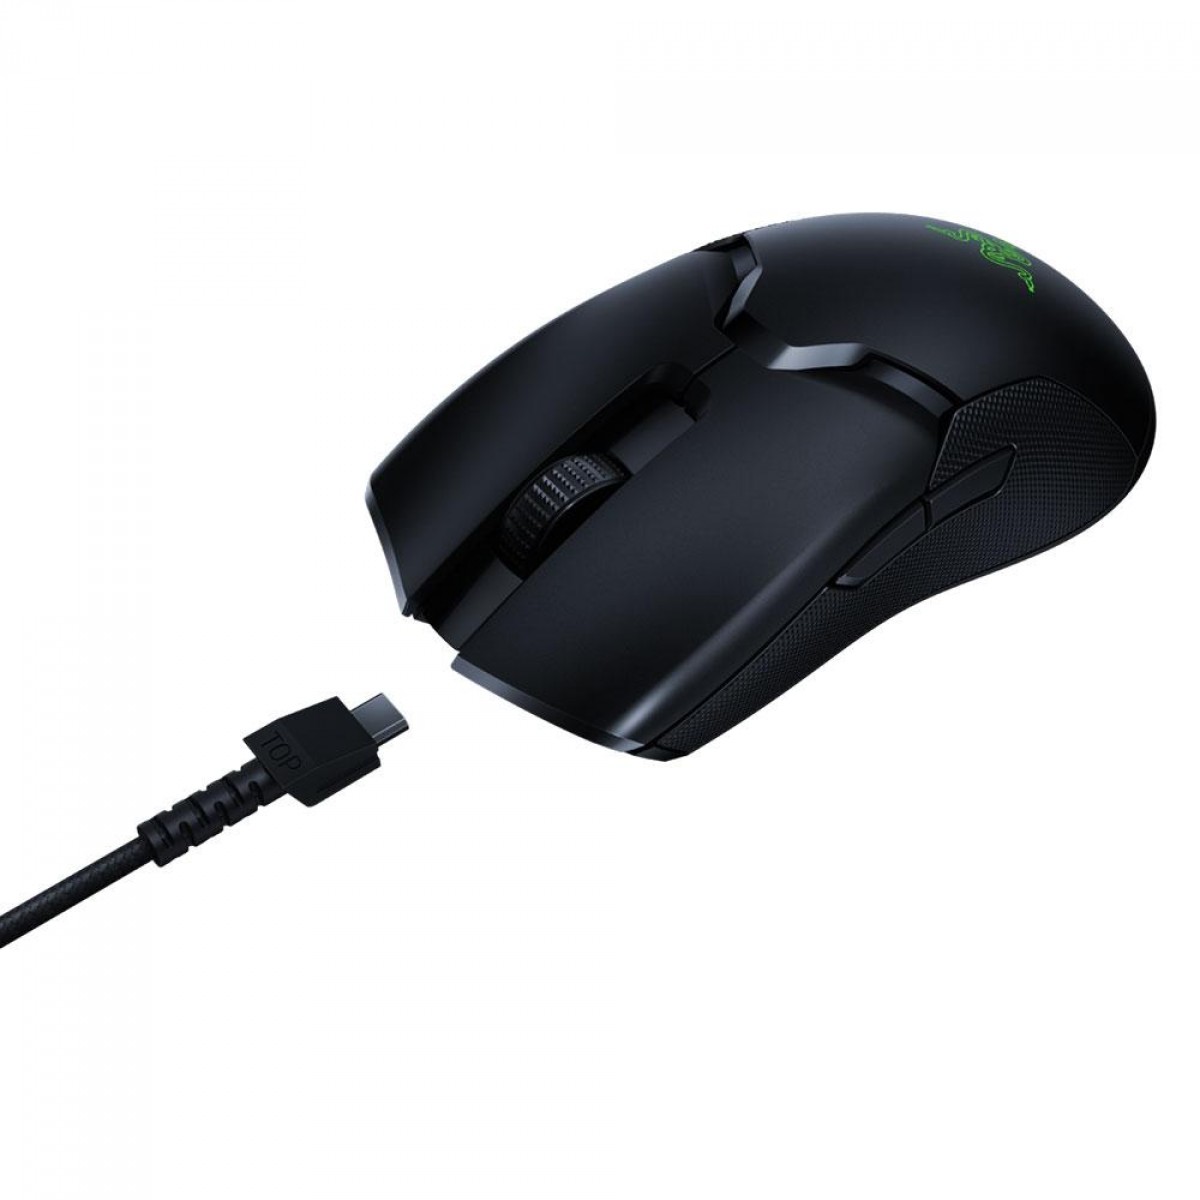 Mouse Gamer Razer Viper Ultimate, Chroma, Sem Fio, 20000DPI, Com Dock, Optical Switch, 8 Botões Programáveis, RZ01-03050100-R3U1